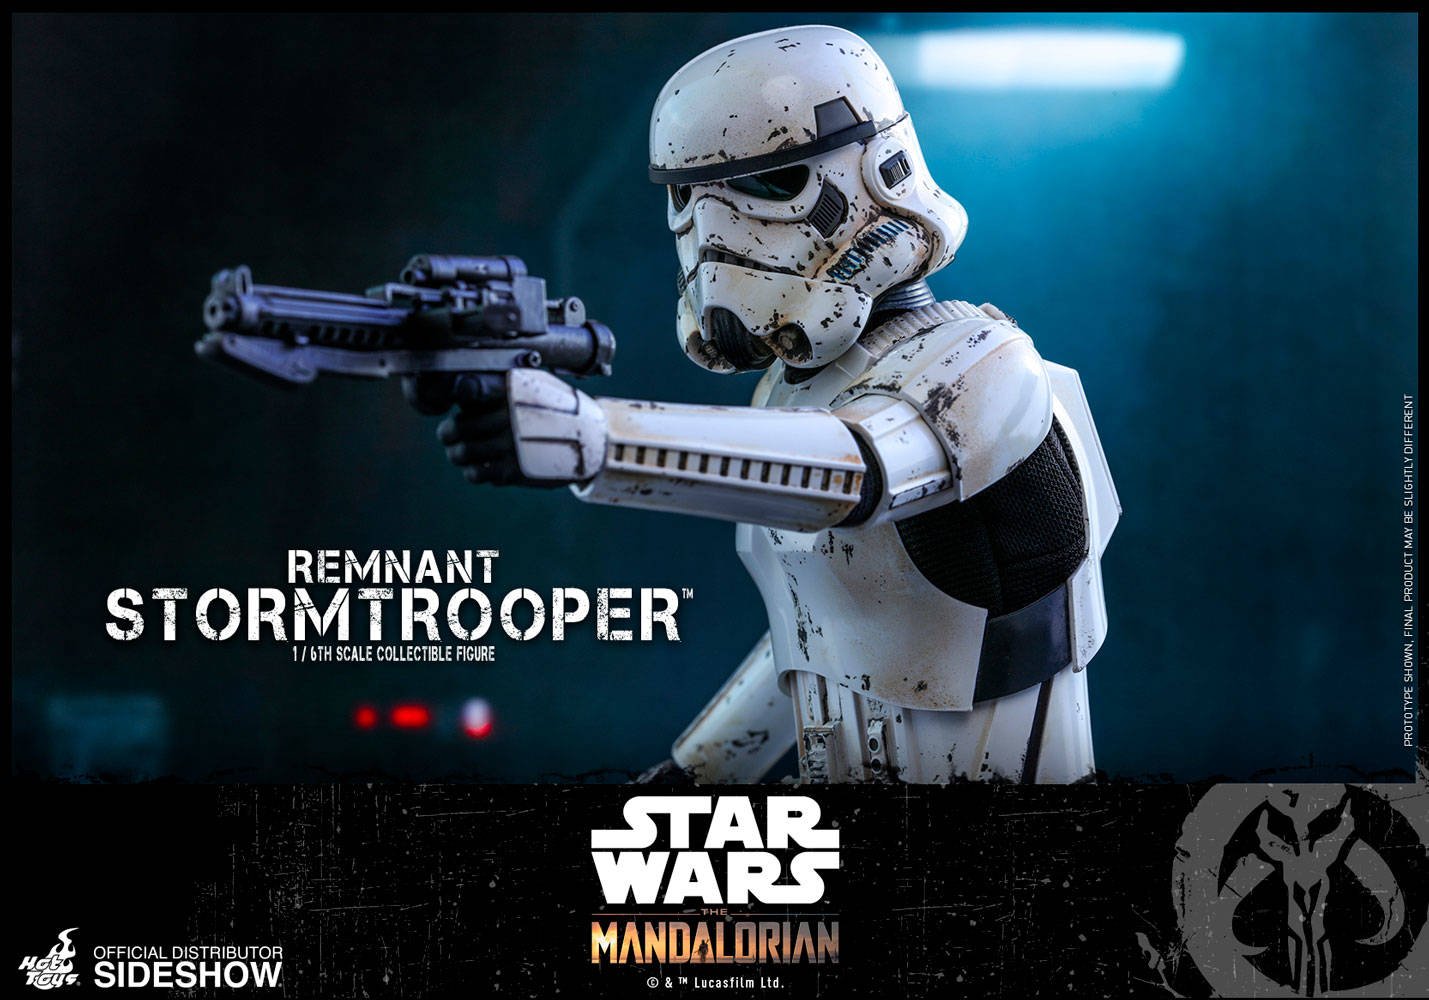 Immagine di Remnant Stormtrooper, la nuova Hot Toys tratta da The Mandalorian